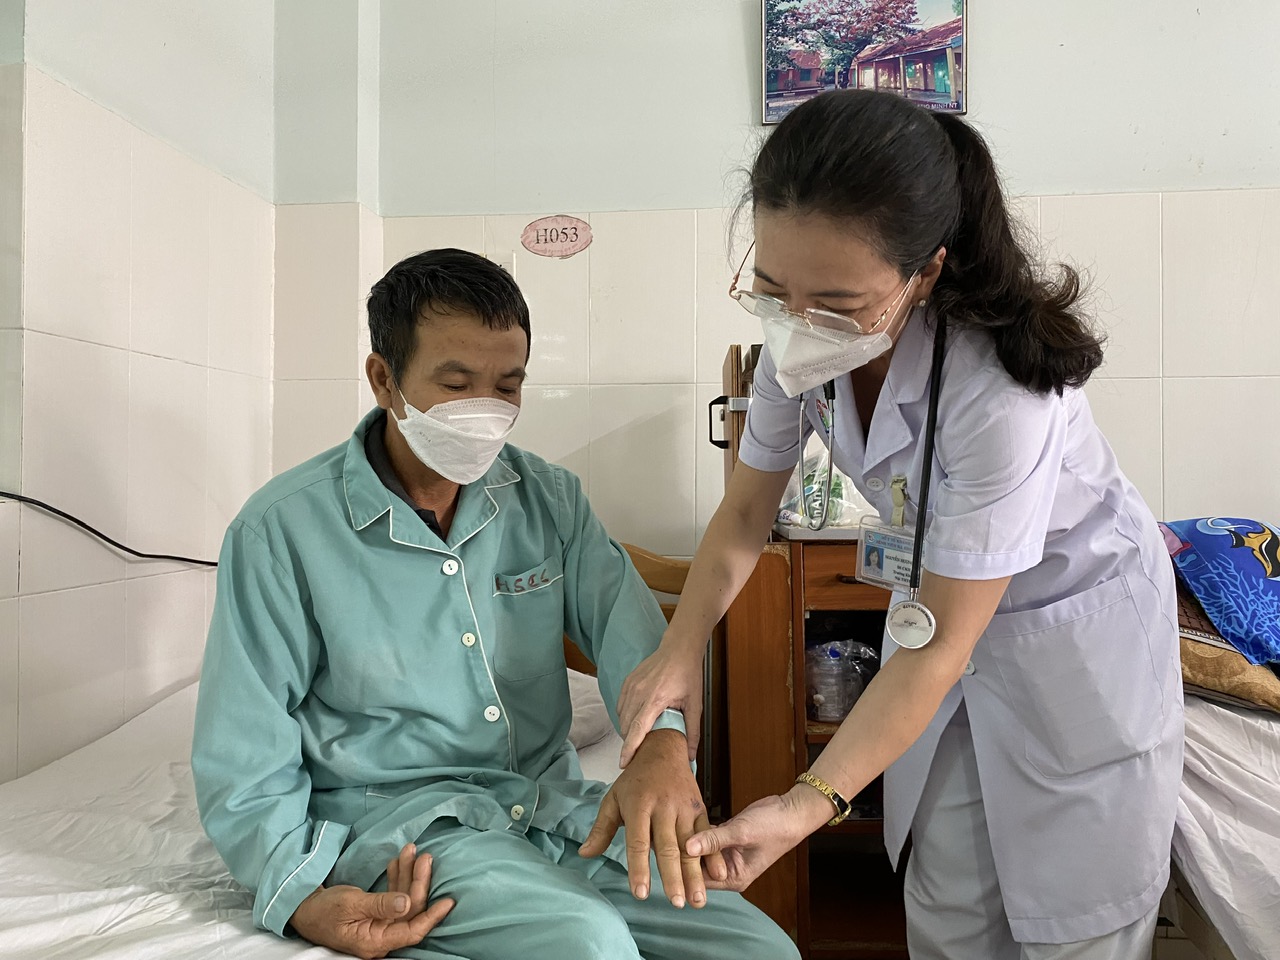 Sức  khoẻ  của  bệnh  nhân  Tiên  sau 4 ngày  điều  trị  đã  ổn  địnhh, bàn  tay đã bớt  sưng